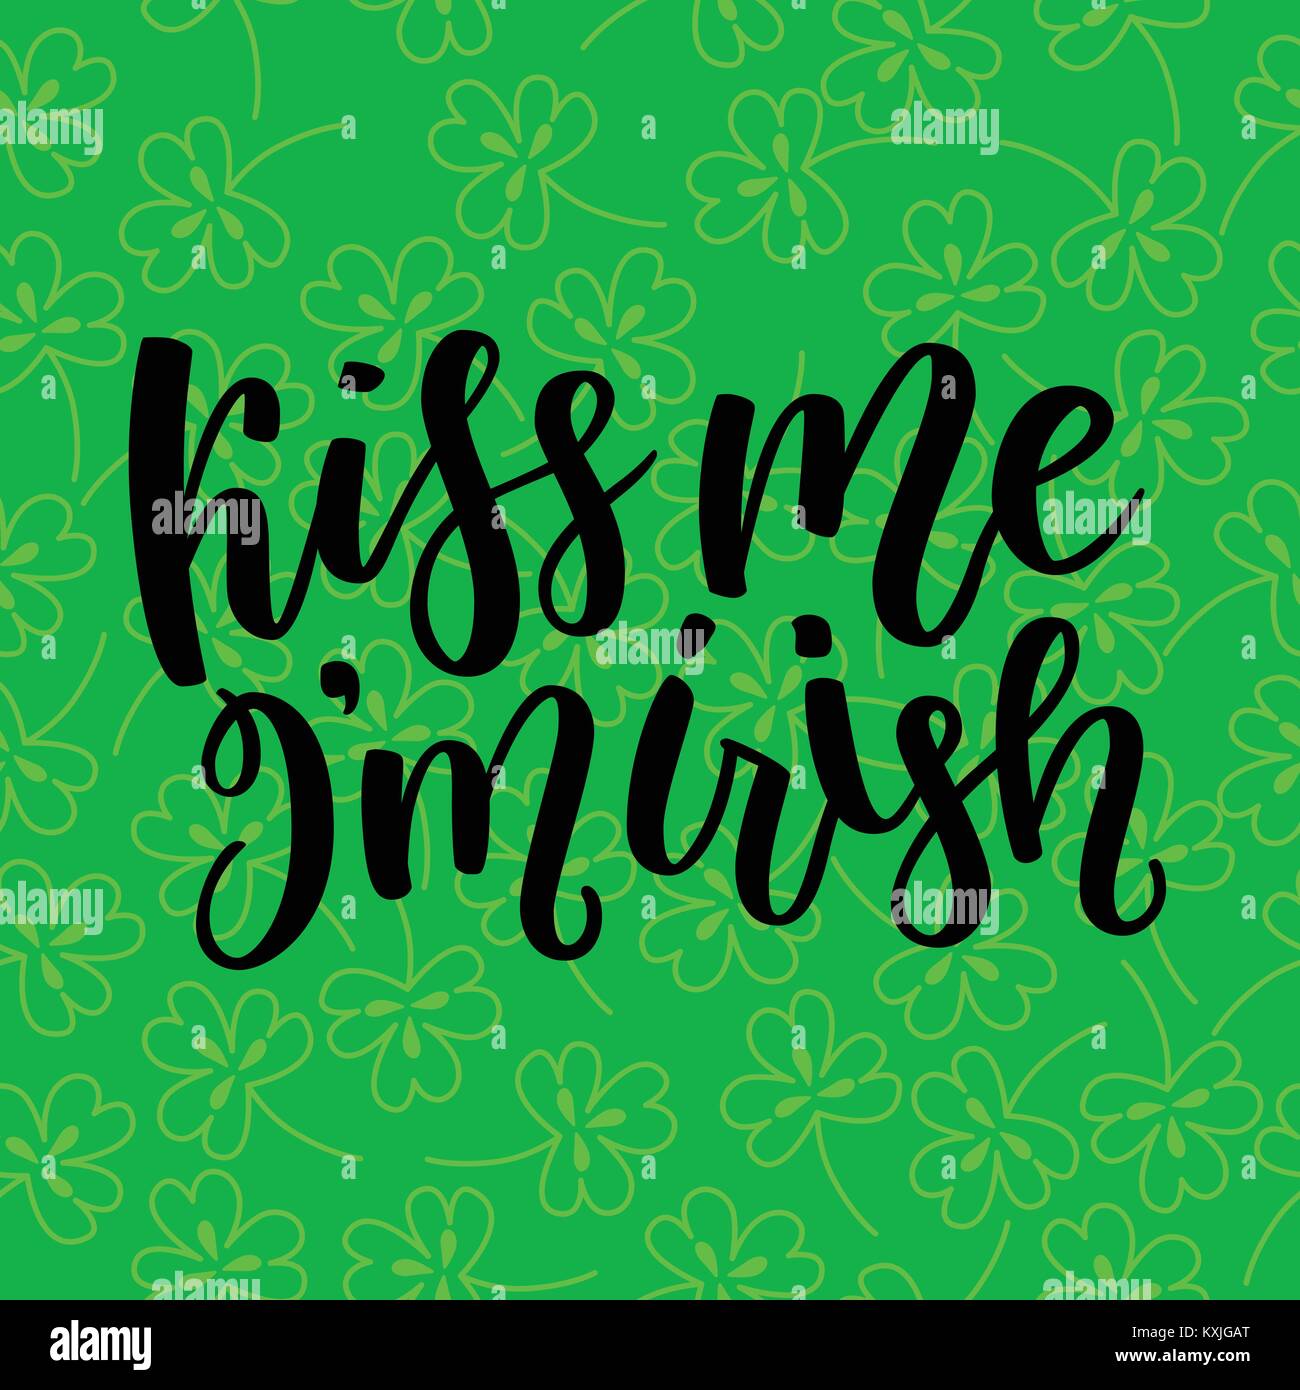 Saint Patricks Day Grußkarte mit Funkelten grünen Klee Blätter und Text. Beschriftung - Küss mich, ich bin der Irischen. St. Patricks Day Schriftzug. Vektor fei Stock Vektor